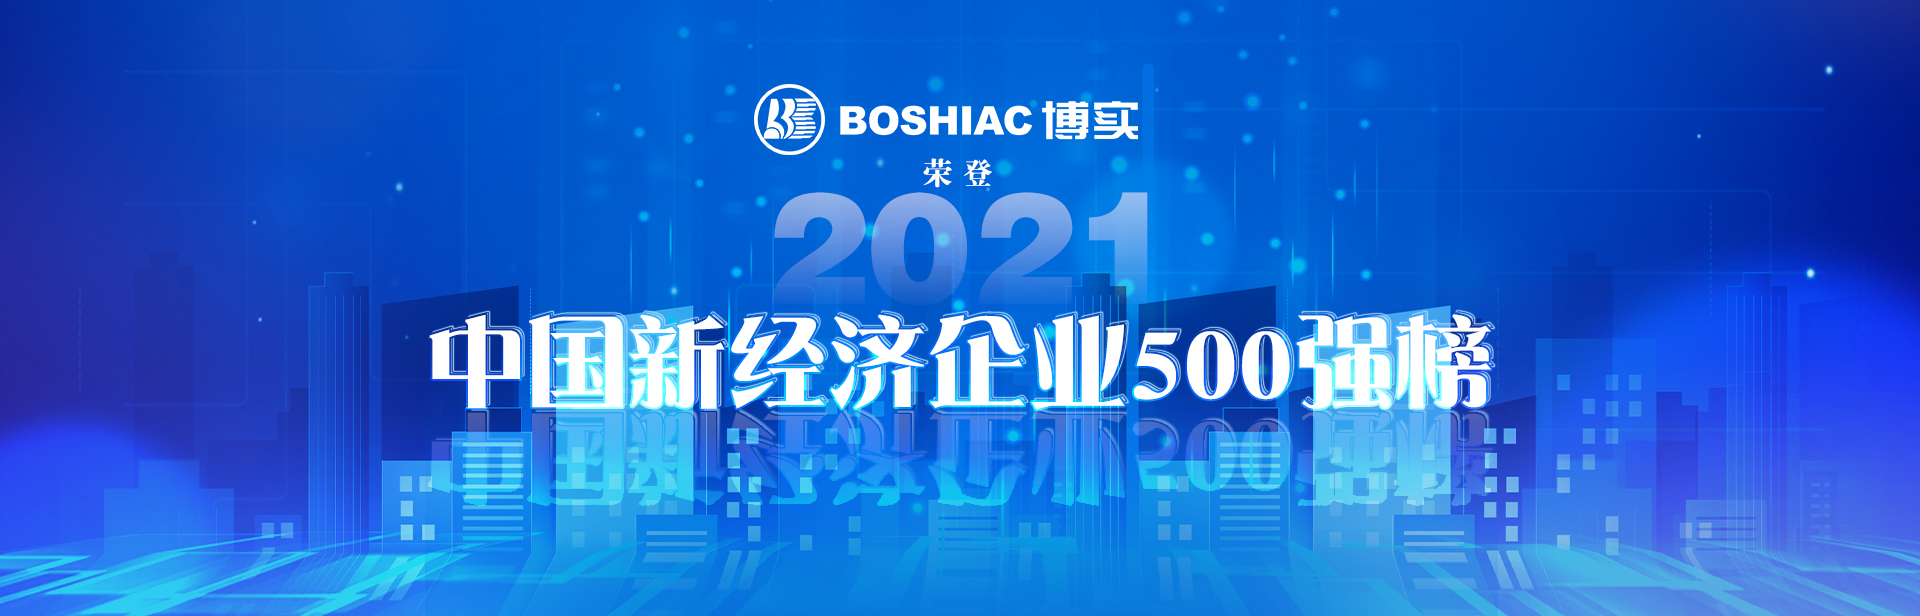 云顶集团4118com股份荣登“2021中国新经济企业500强”榜